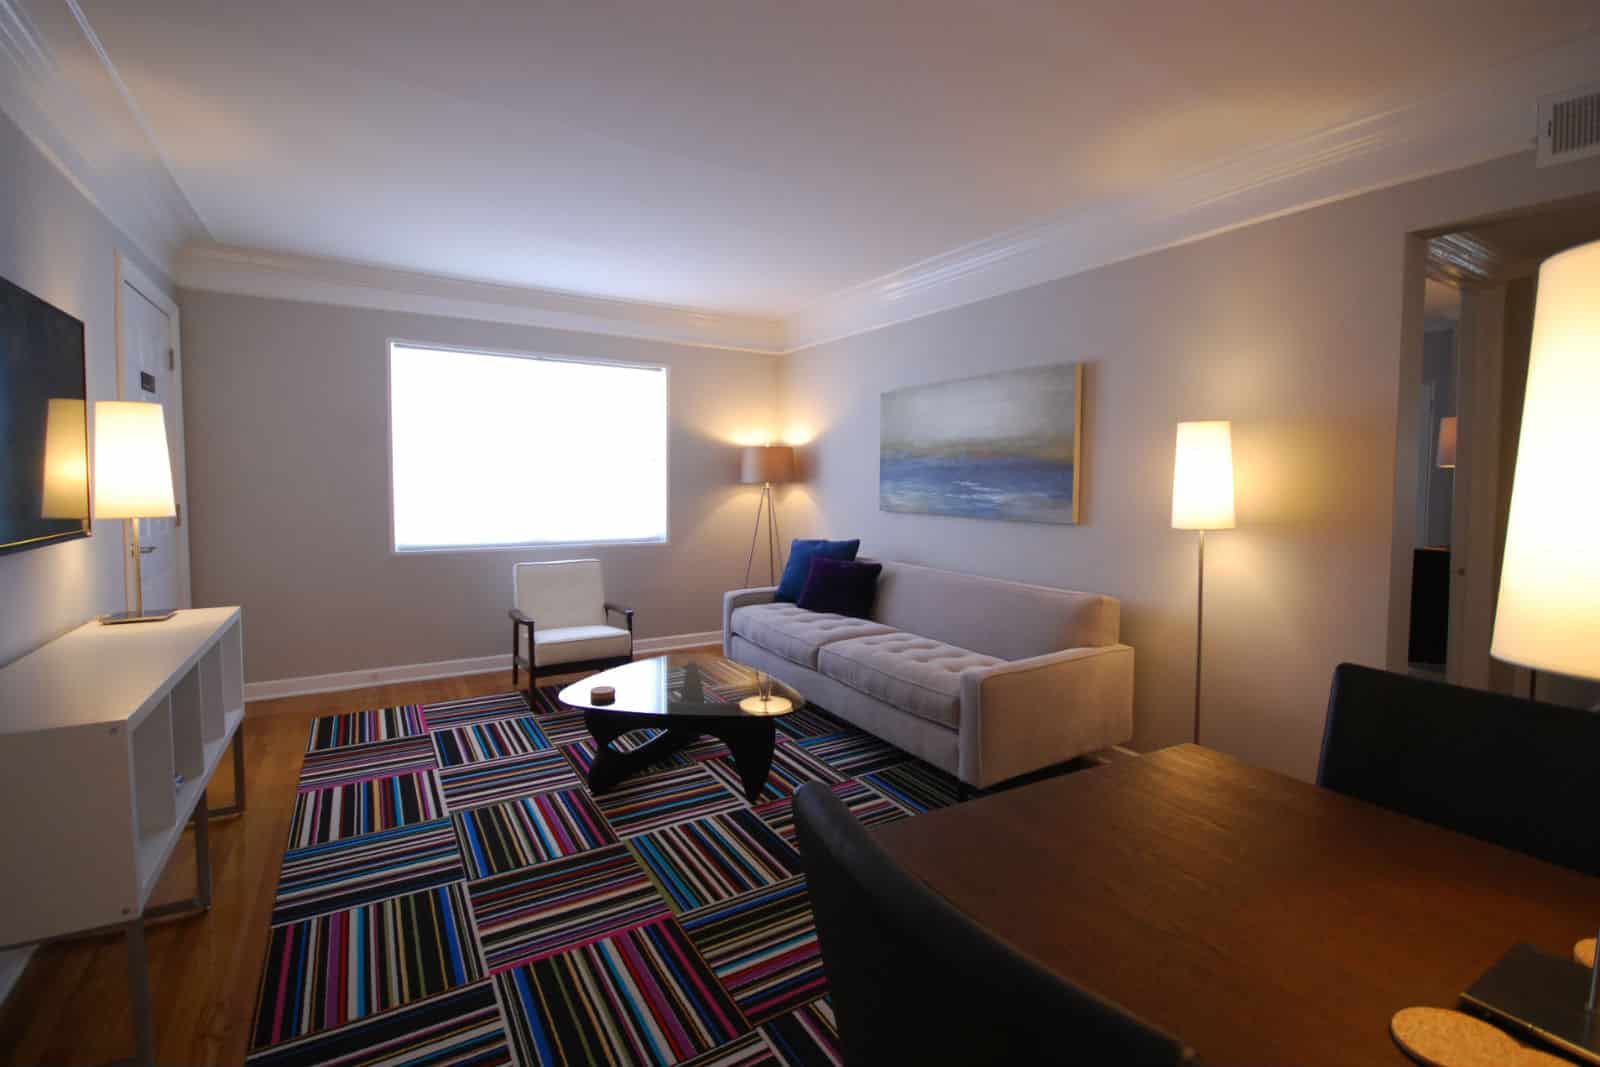 2 Bedroom Hotel Suites Atlanta Ga Search your favorite Image